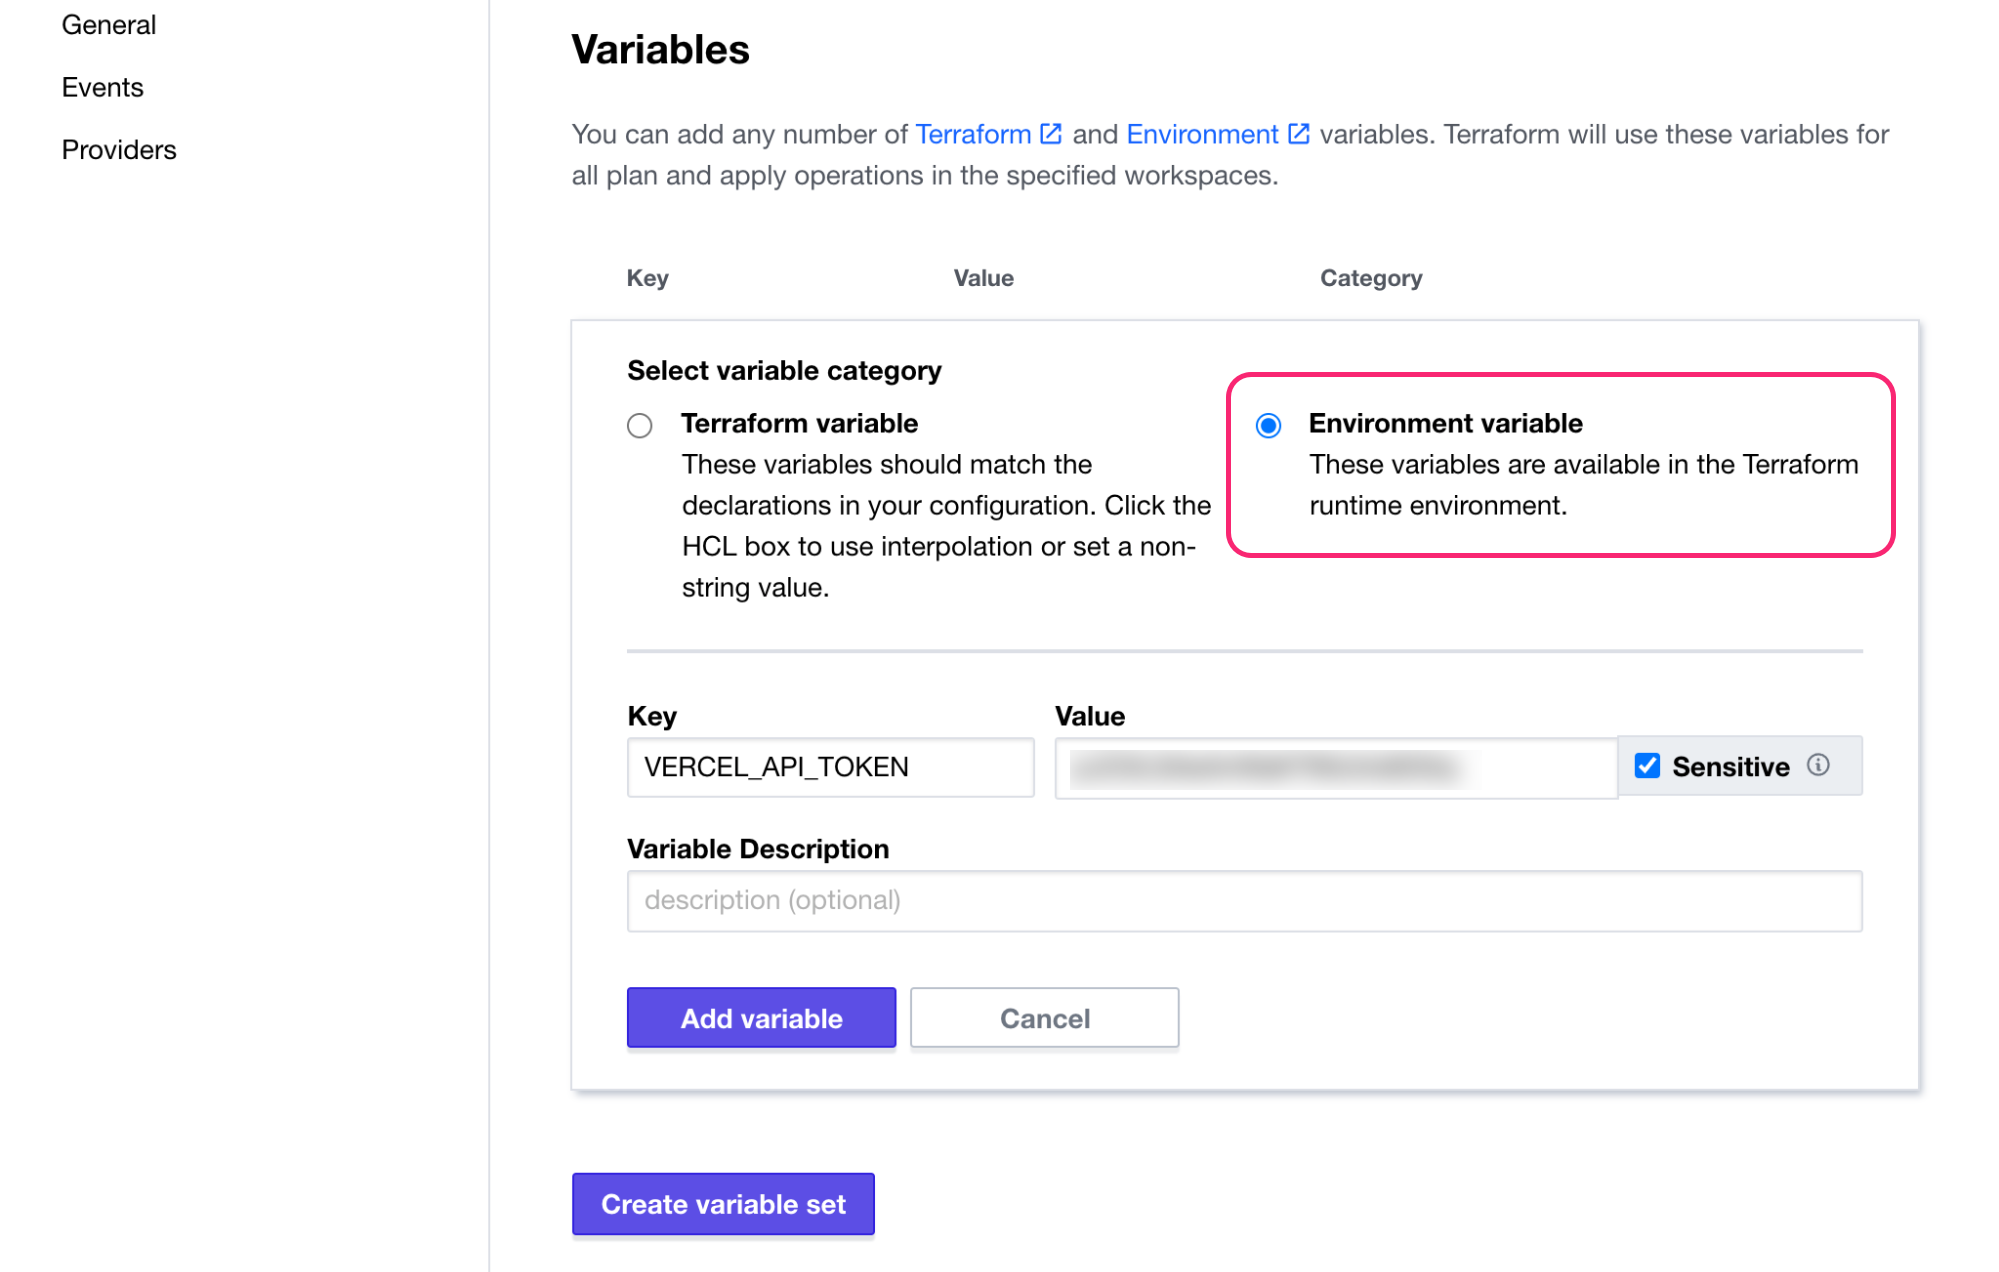 Create variable set for Vercel API token